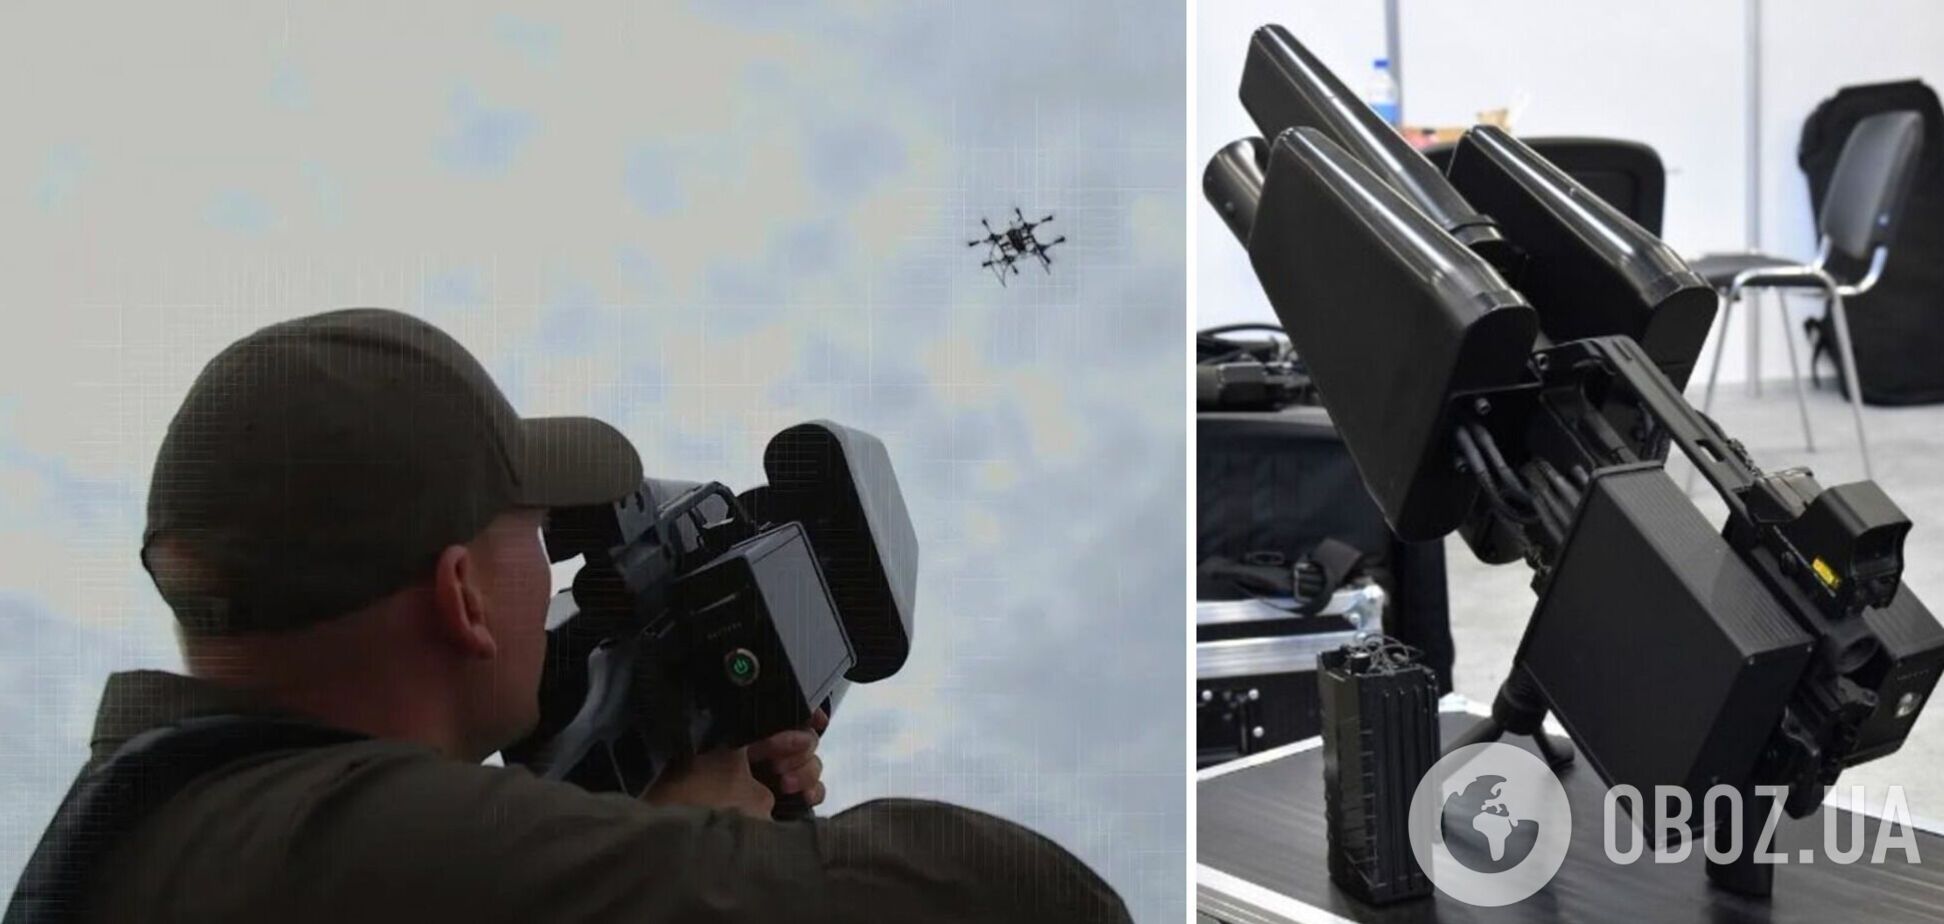 Украина получит от литовцев 110 антидроновых ружей EDM4S Sky Wipers: как они помогут ВСУ